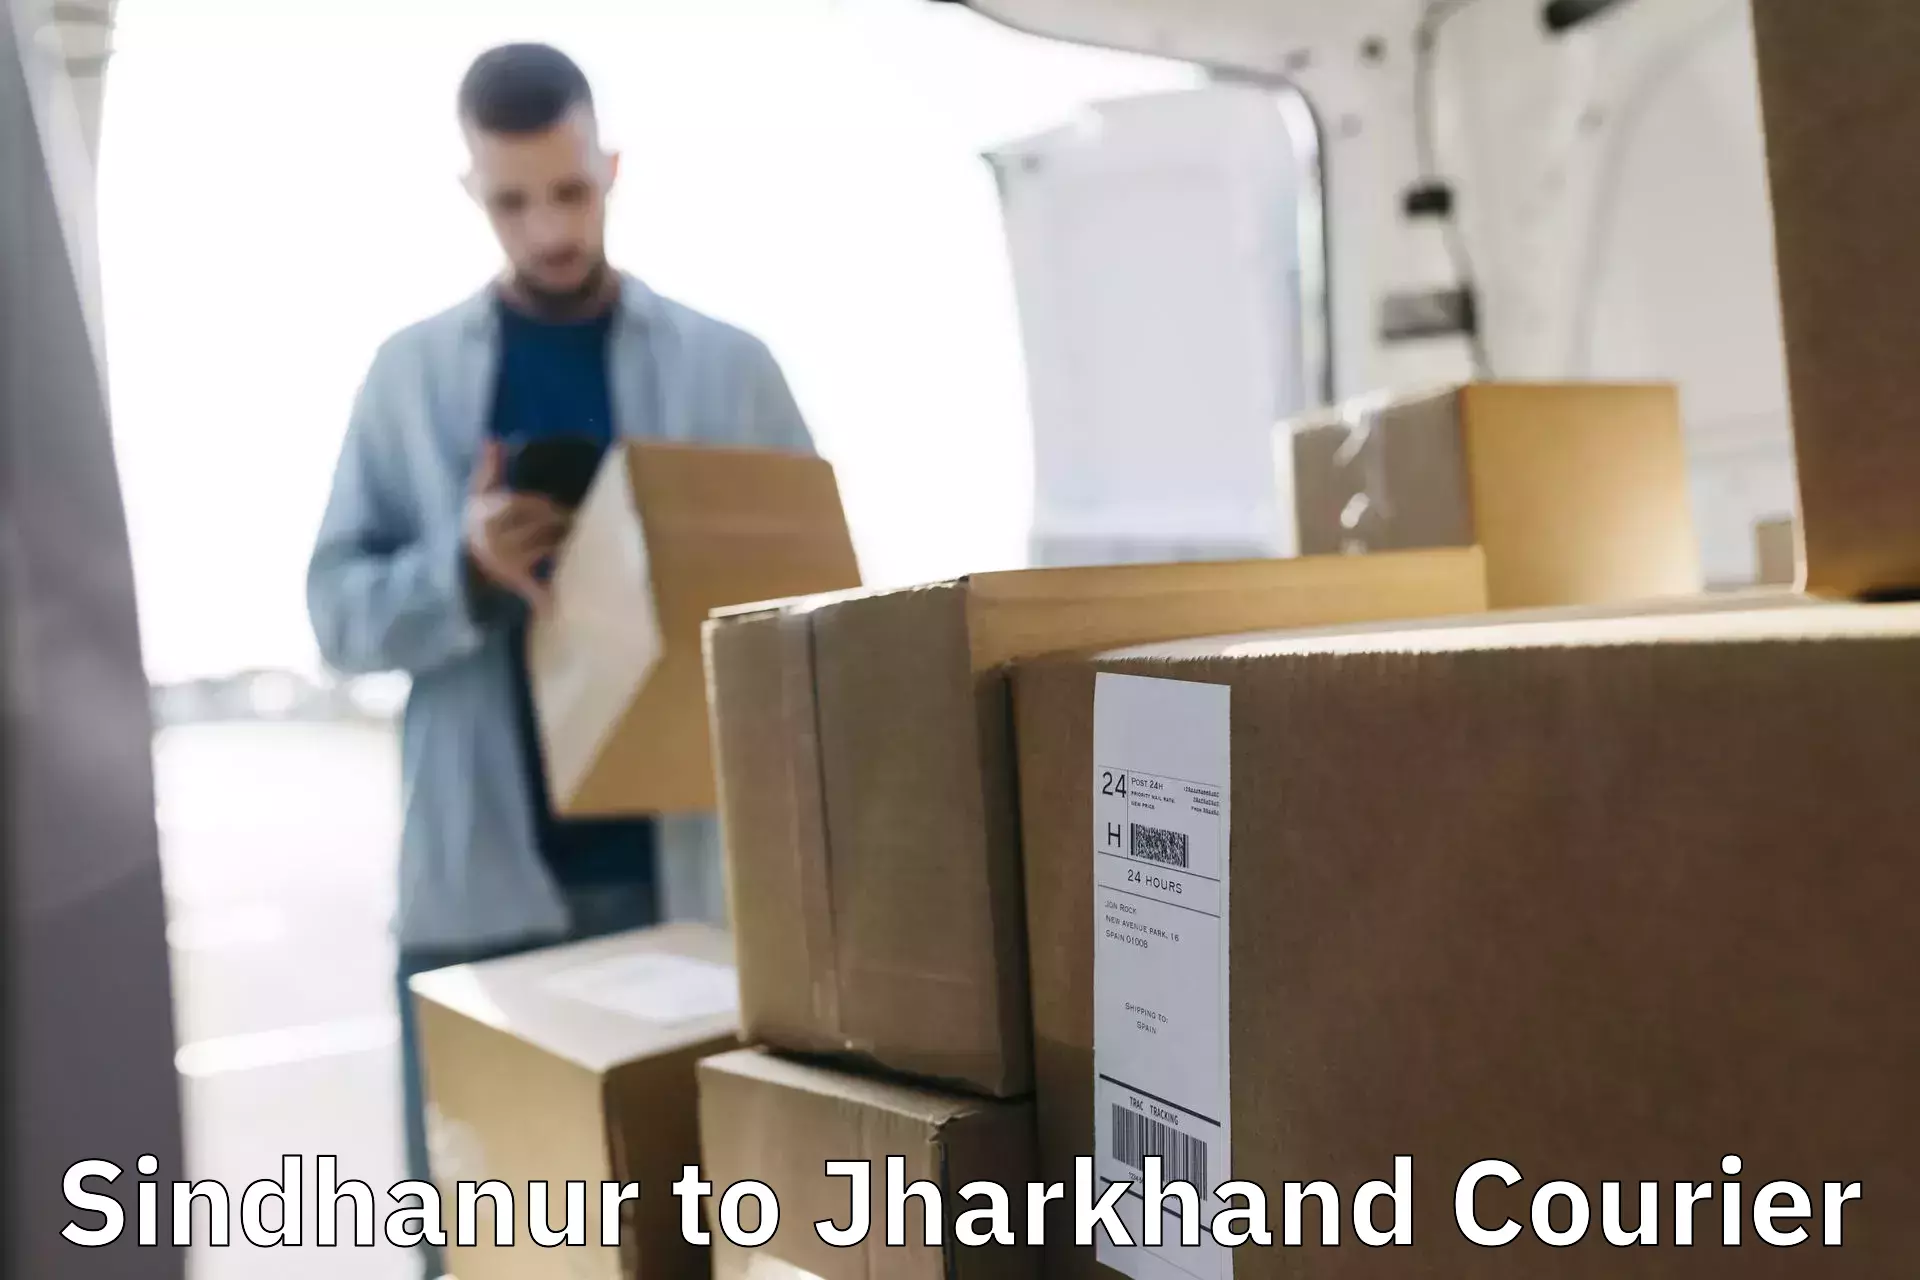 Nationwide parcel services Sindhanur to Ranka Garhwa